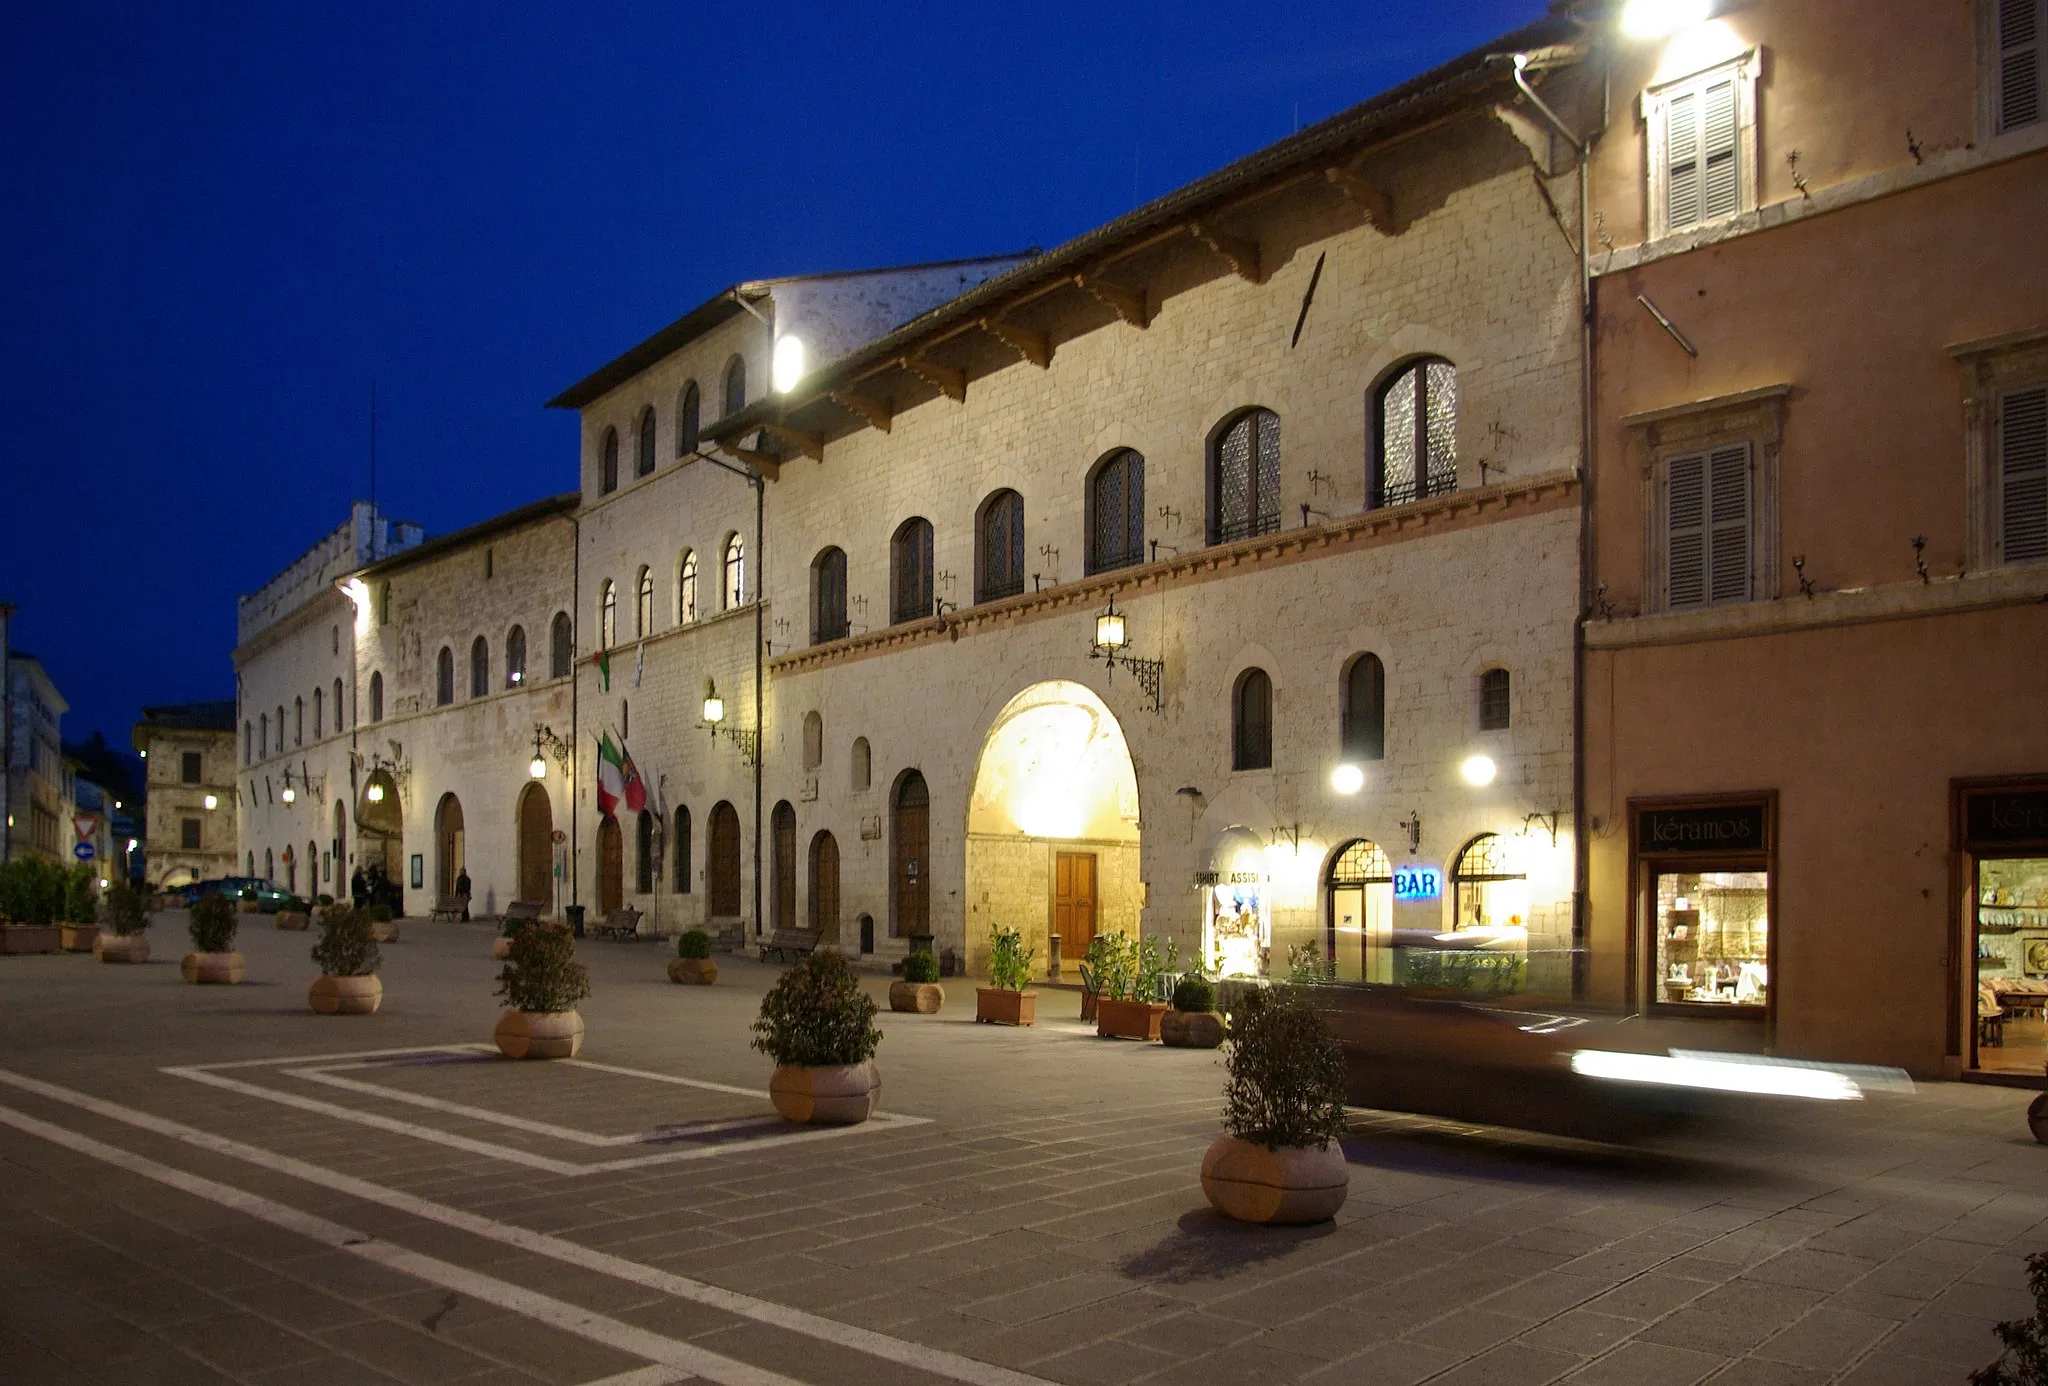 Image of Umbria